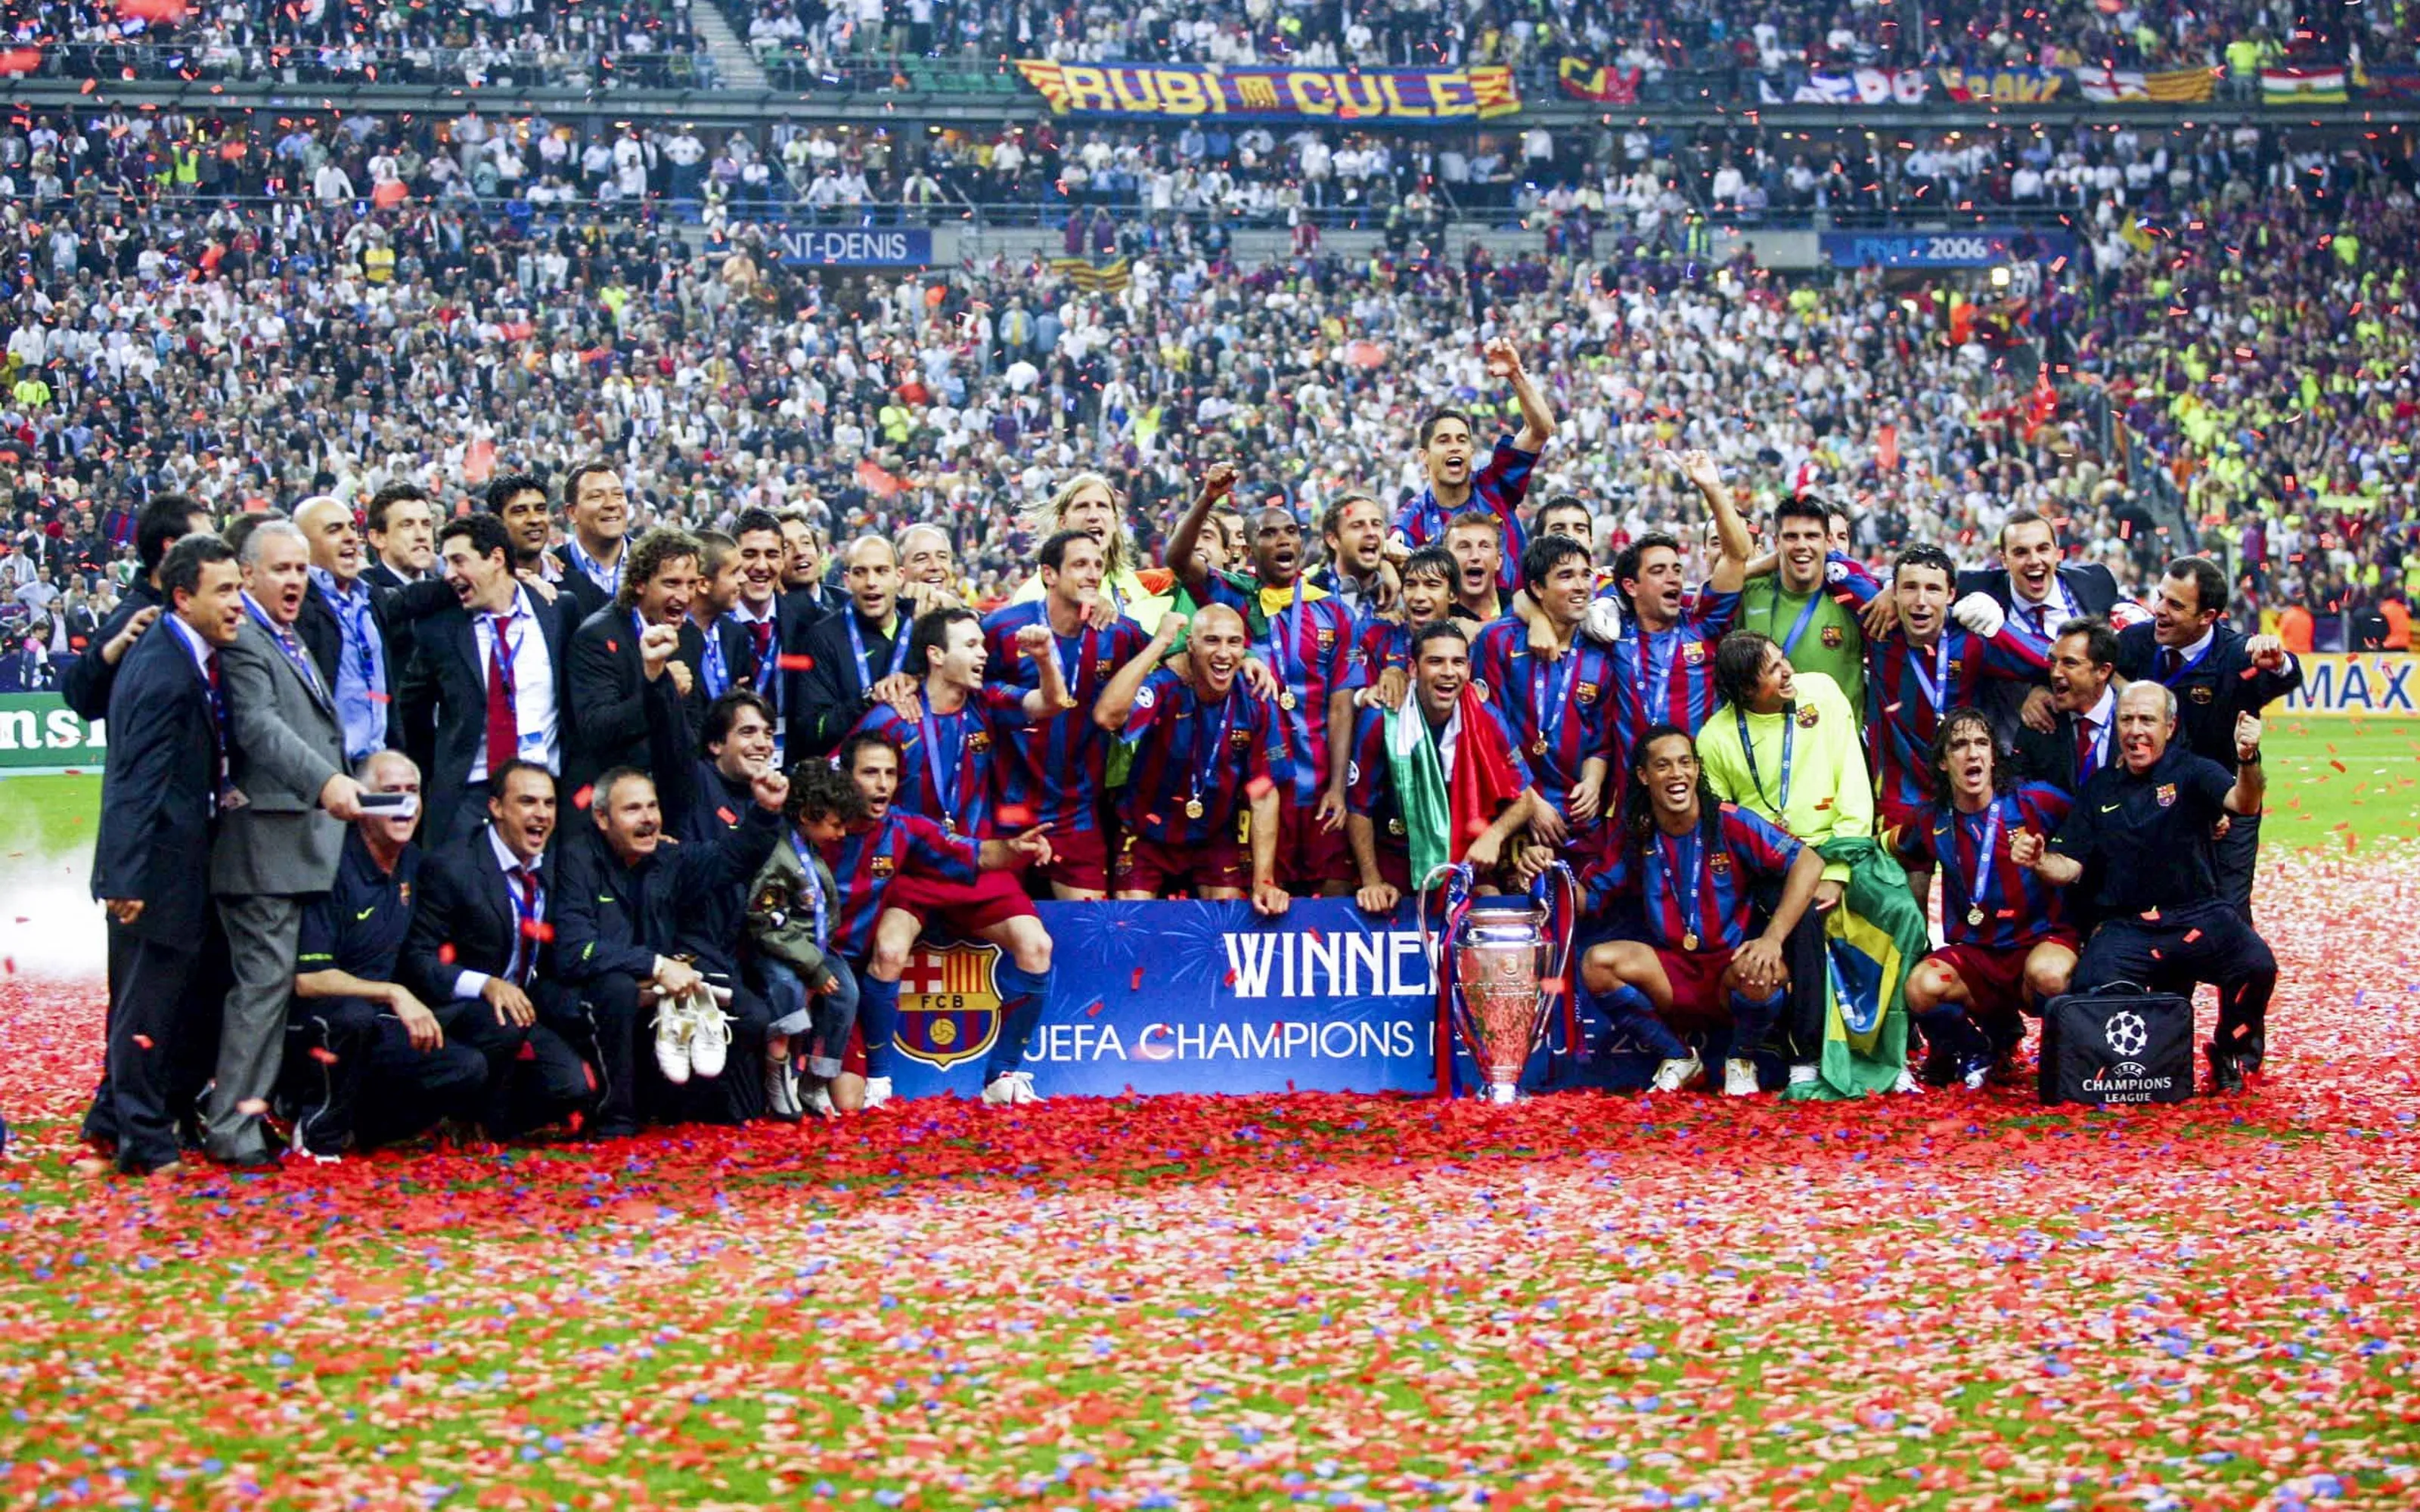  La plantilla azulgrana y el staff celebrando la victoria de la Champions (2006) | Barça